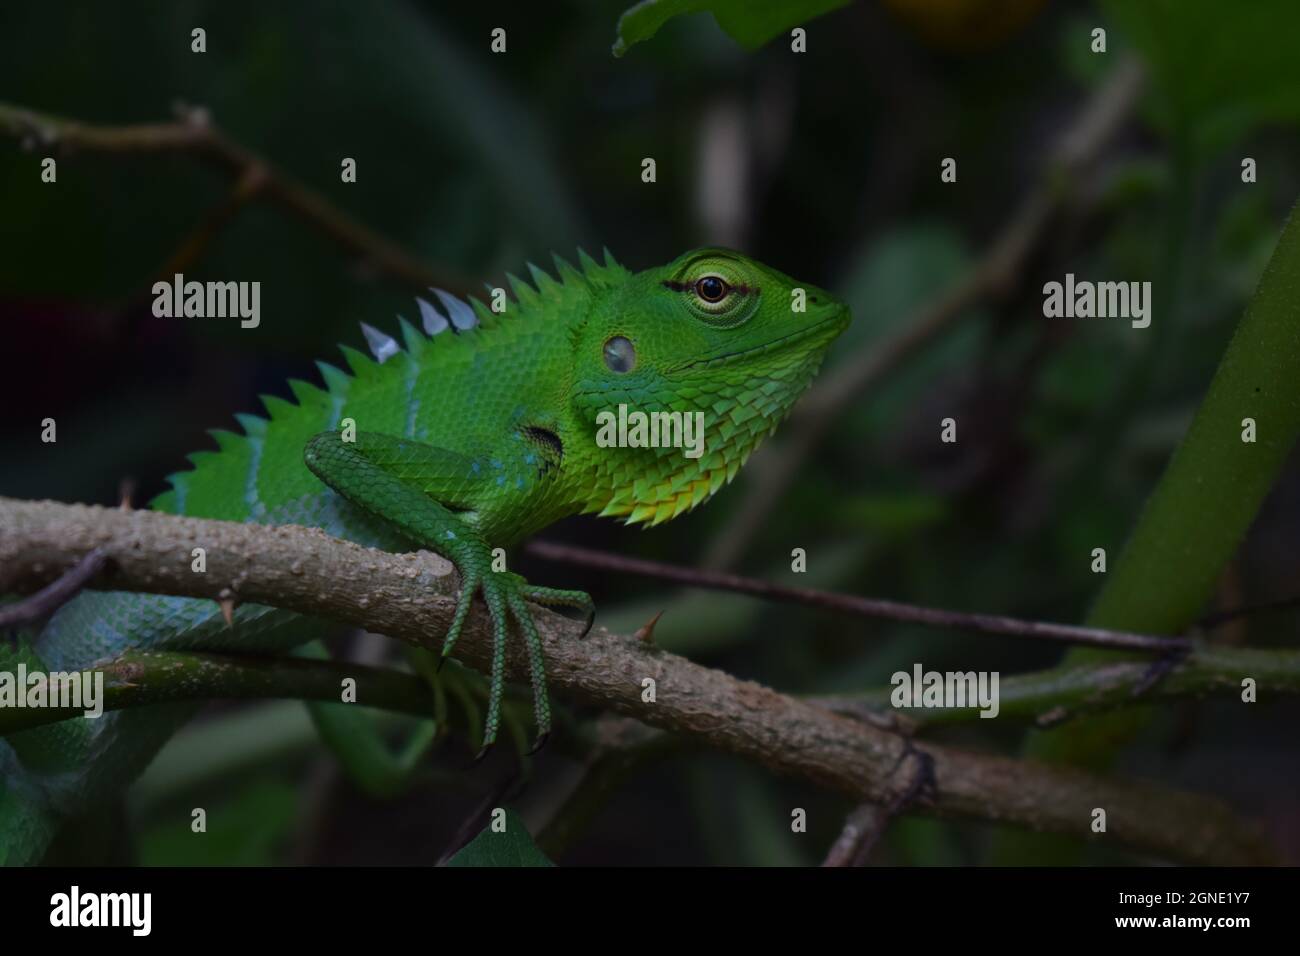 Il Green Garden Lizard si trova in Sri Lanka e in pochi paesi asiatici. La sua testa è relativamente grande e ha la capacità di cambiarne il colore . Foto Stock